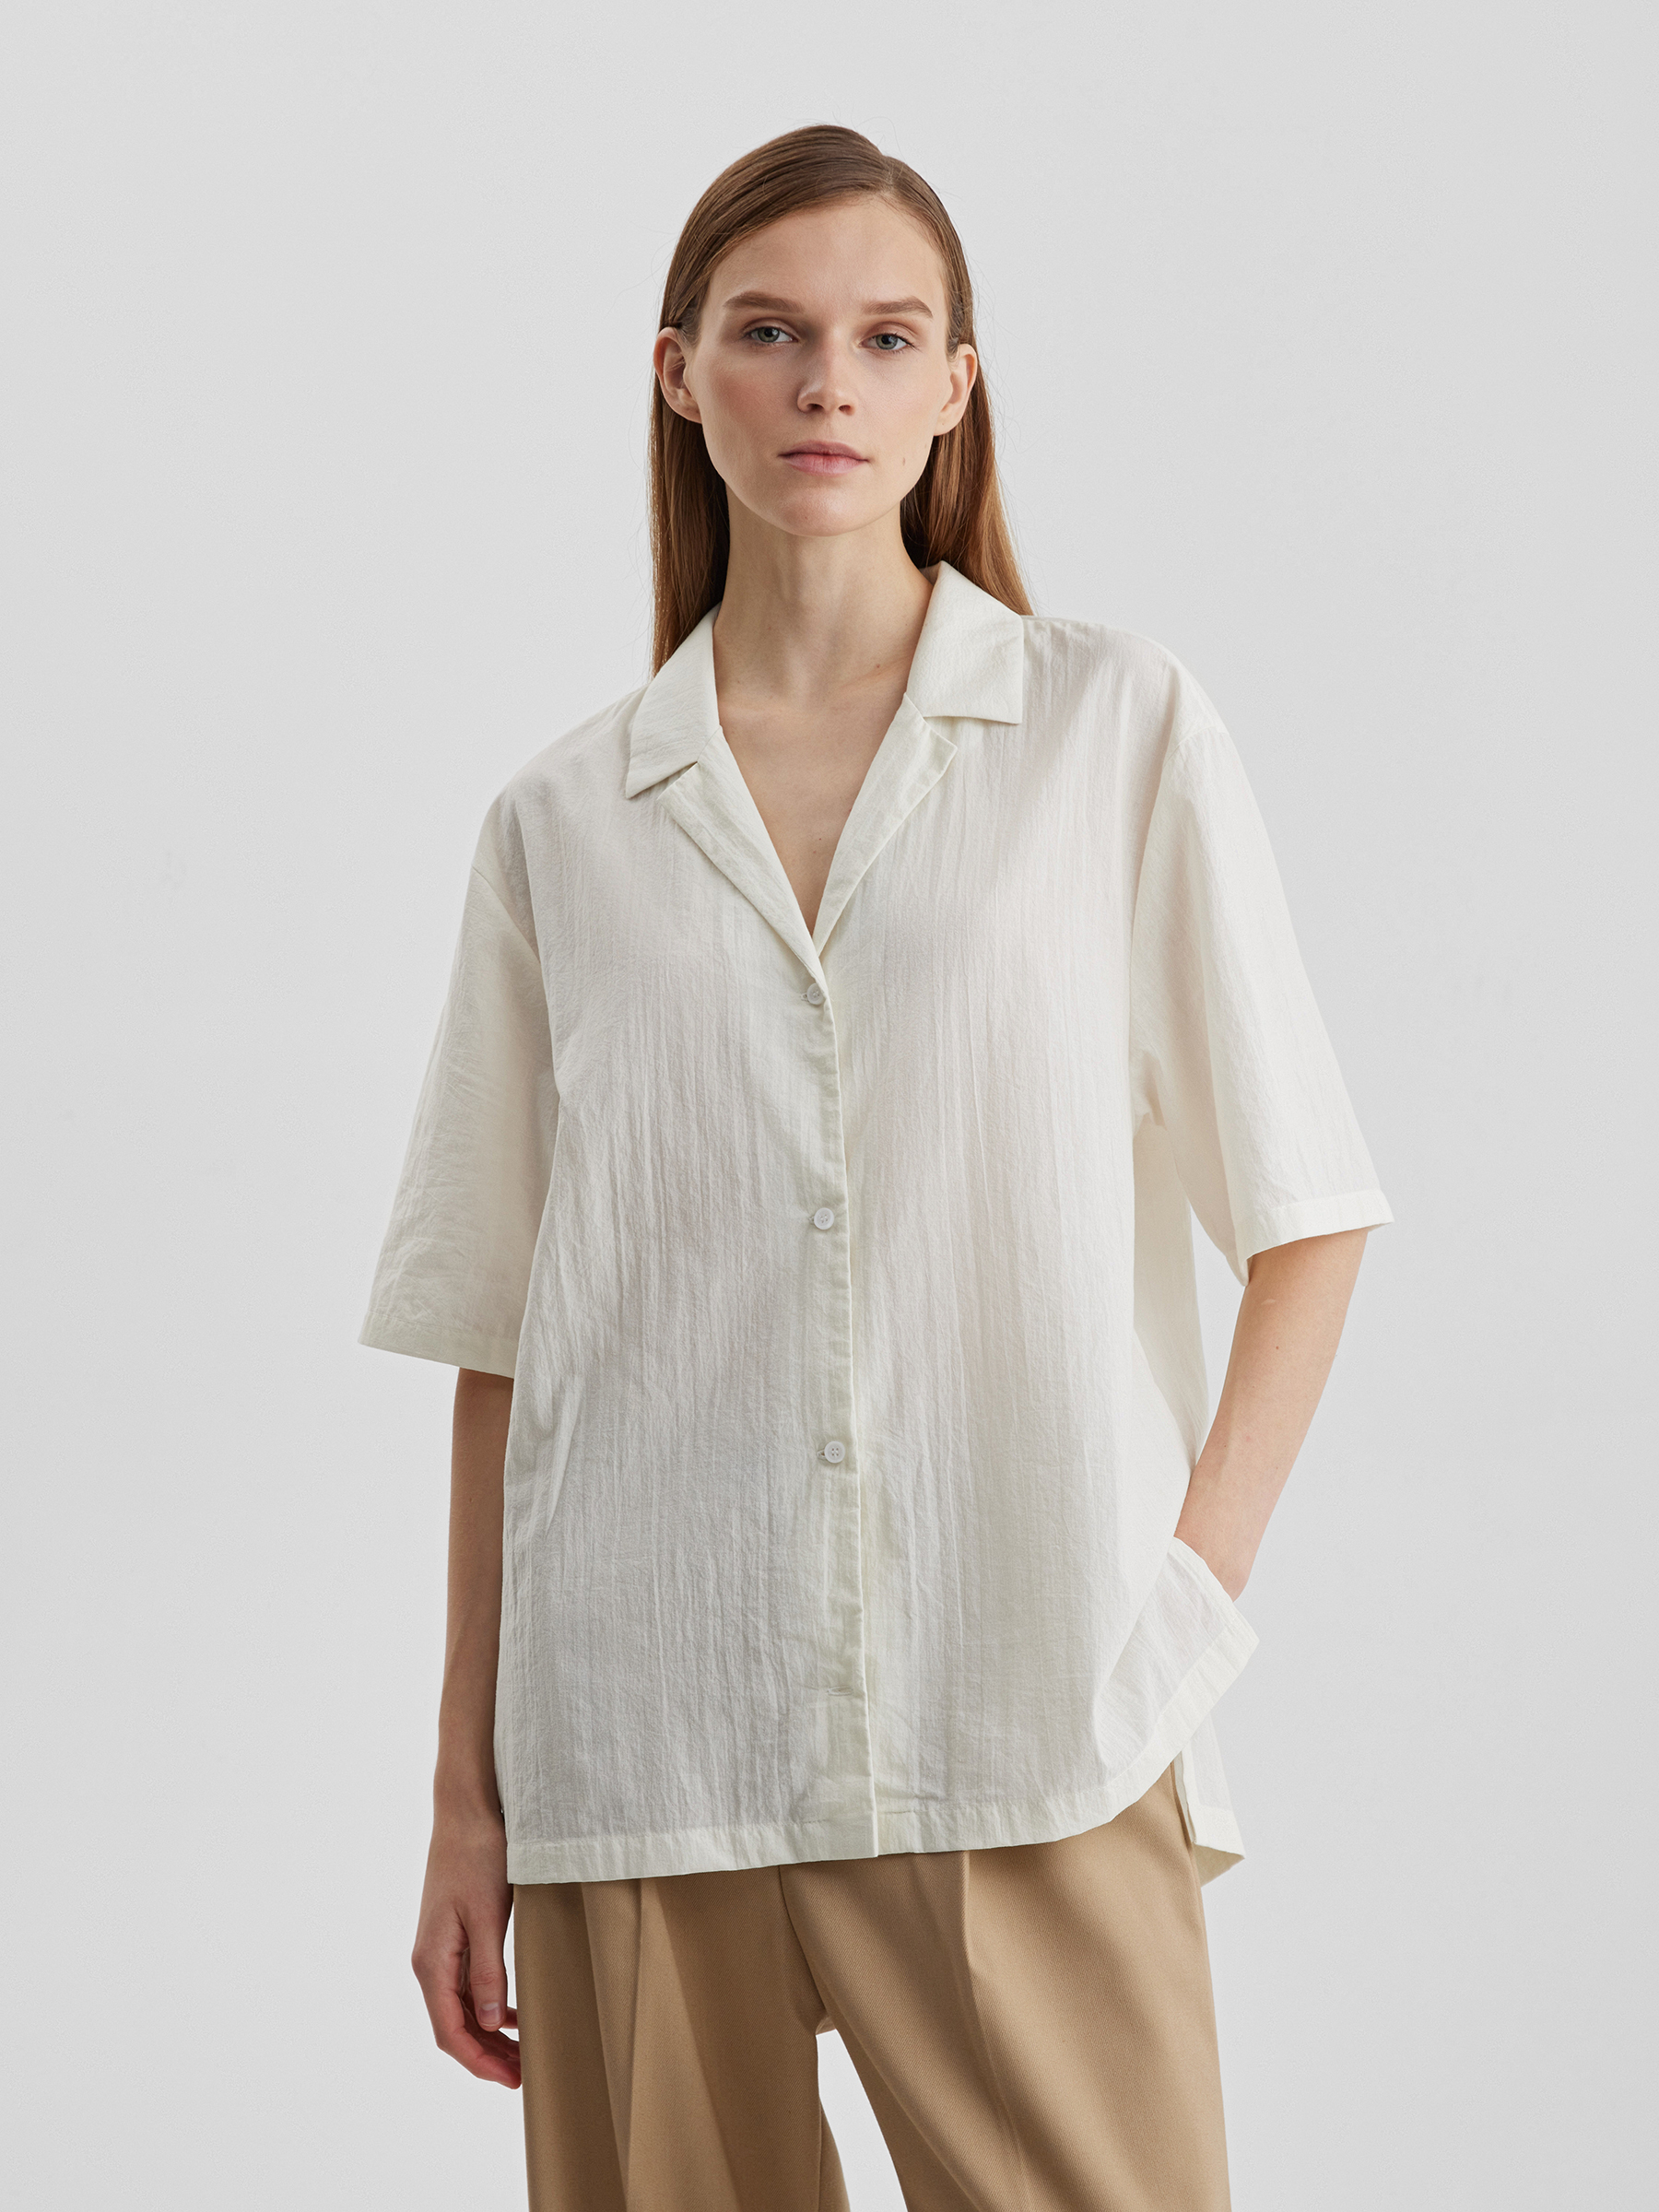 цена Рубашка женская с коротким рукавом из лёгкого хлопка, цвет – молочный